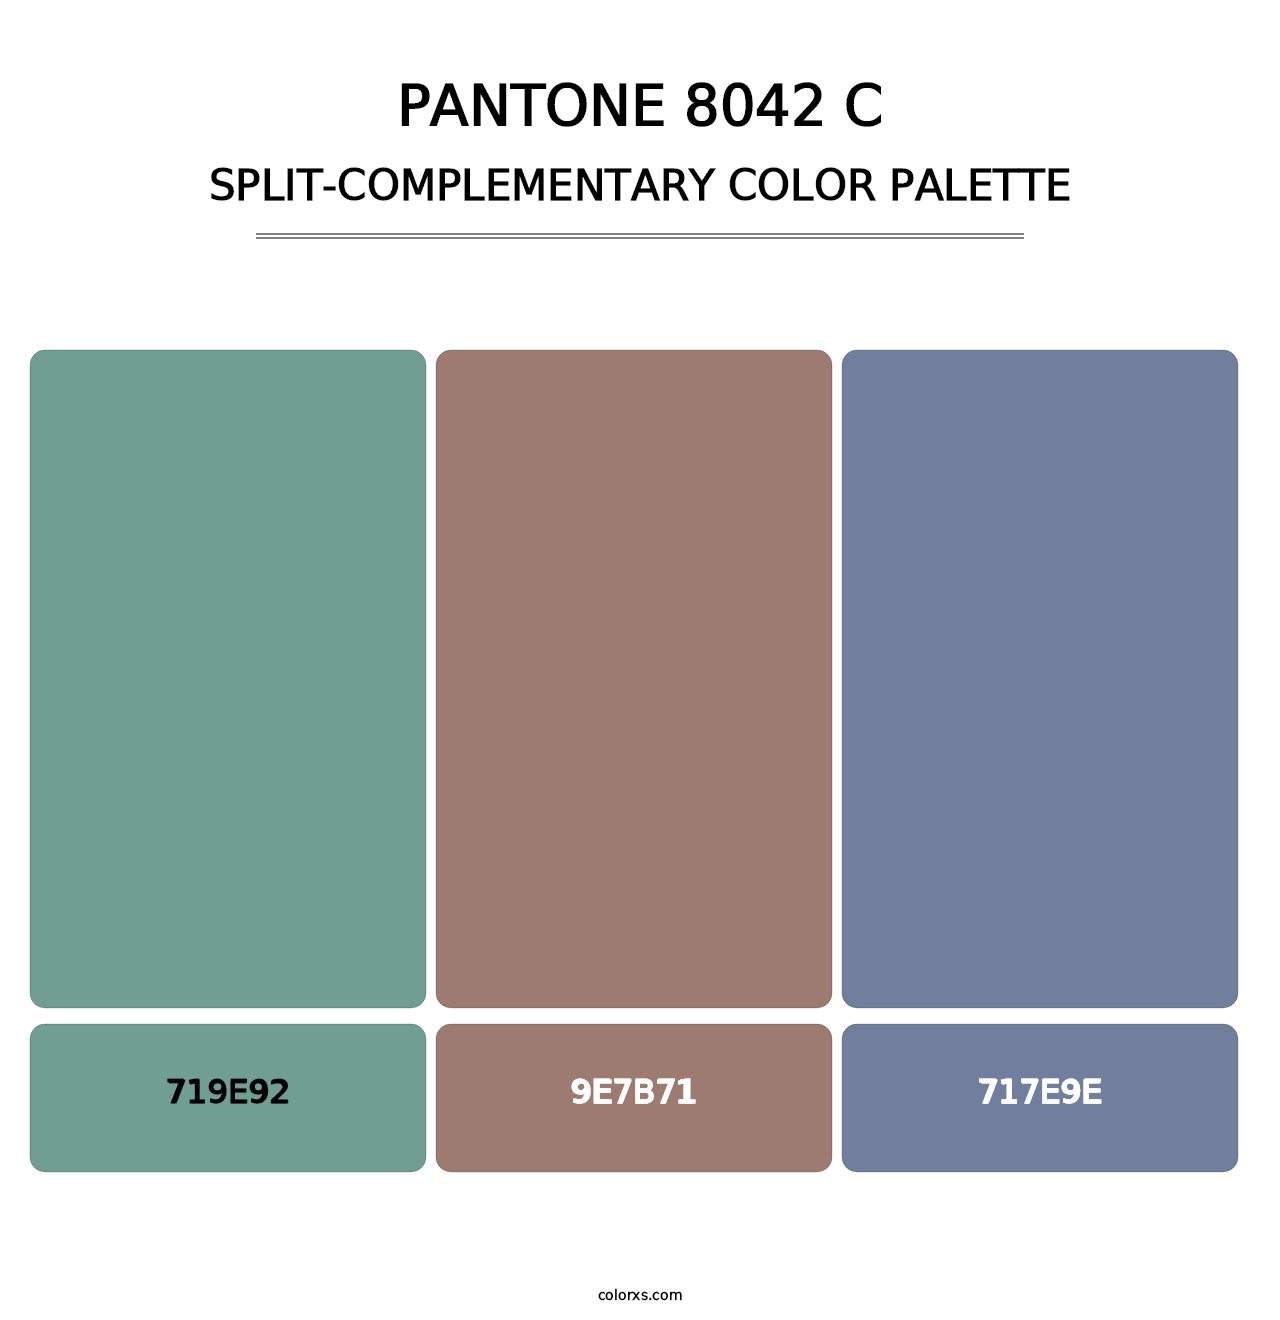 PANTONE 8042 C - Split-Complementary Color Palette